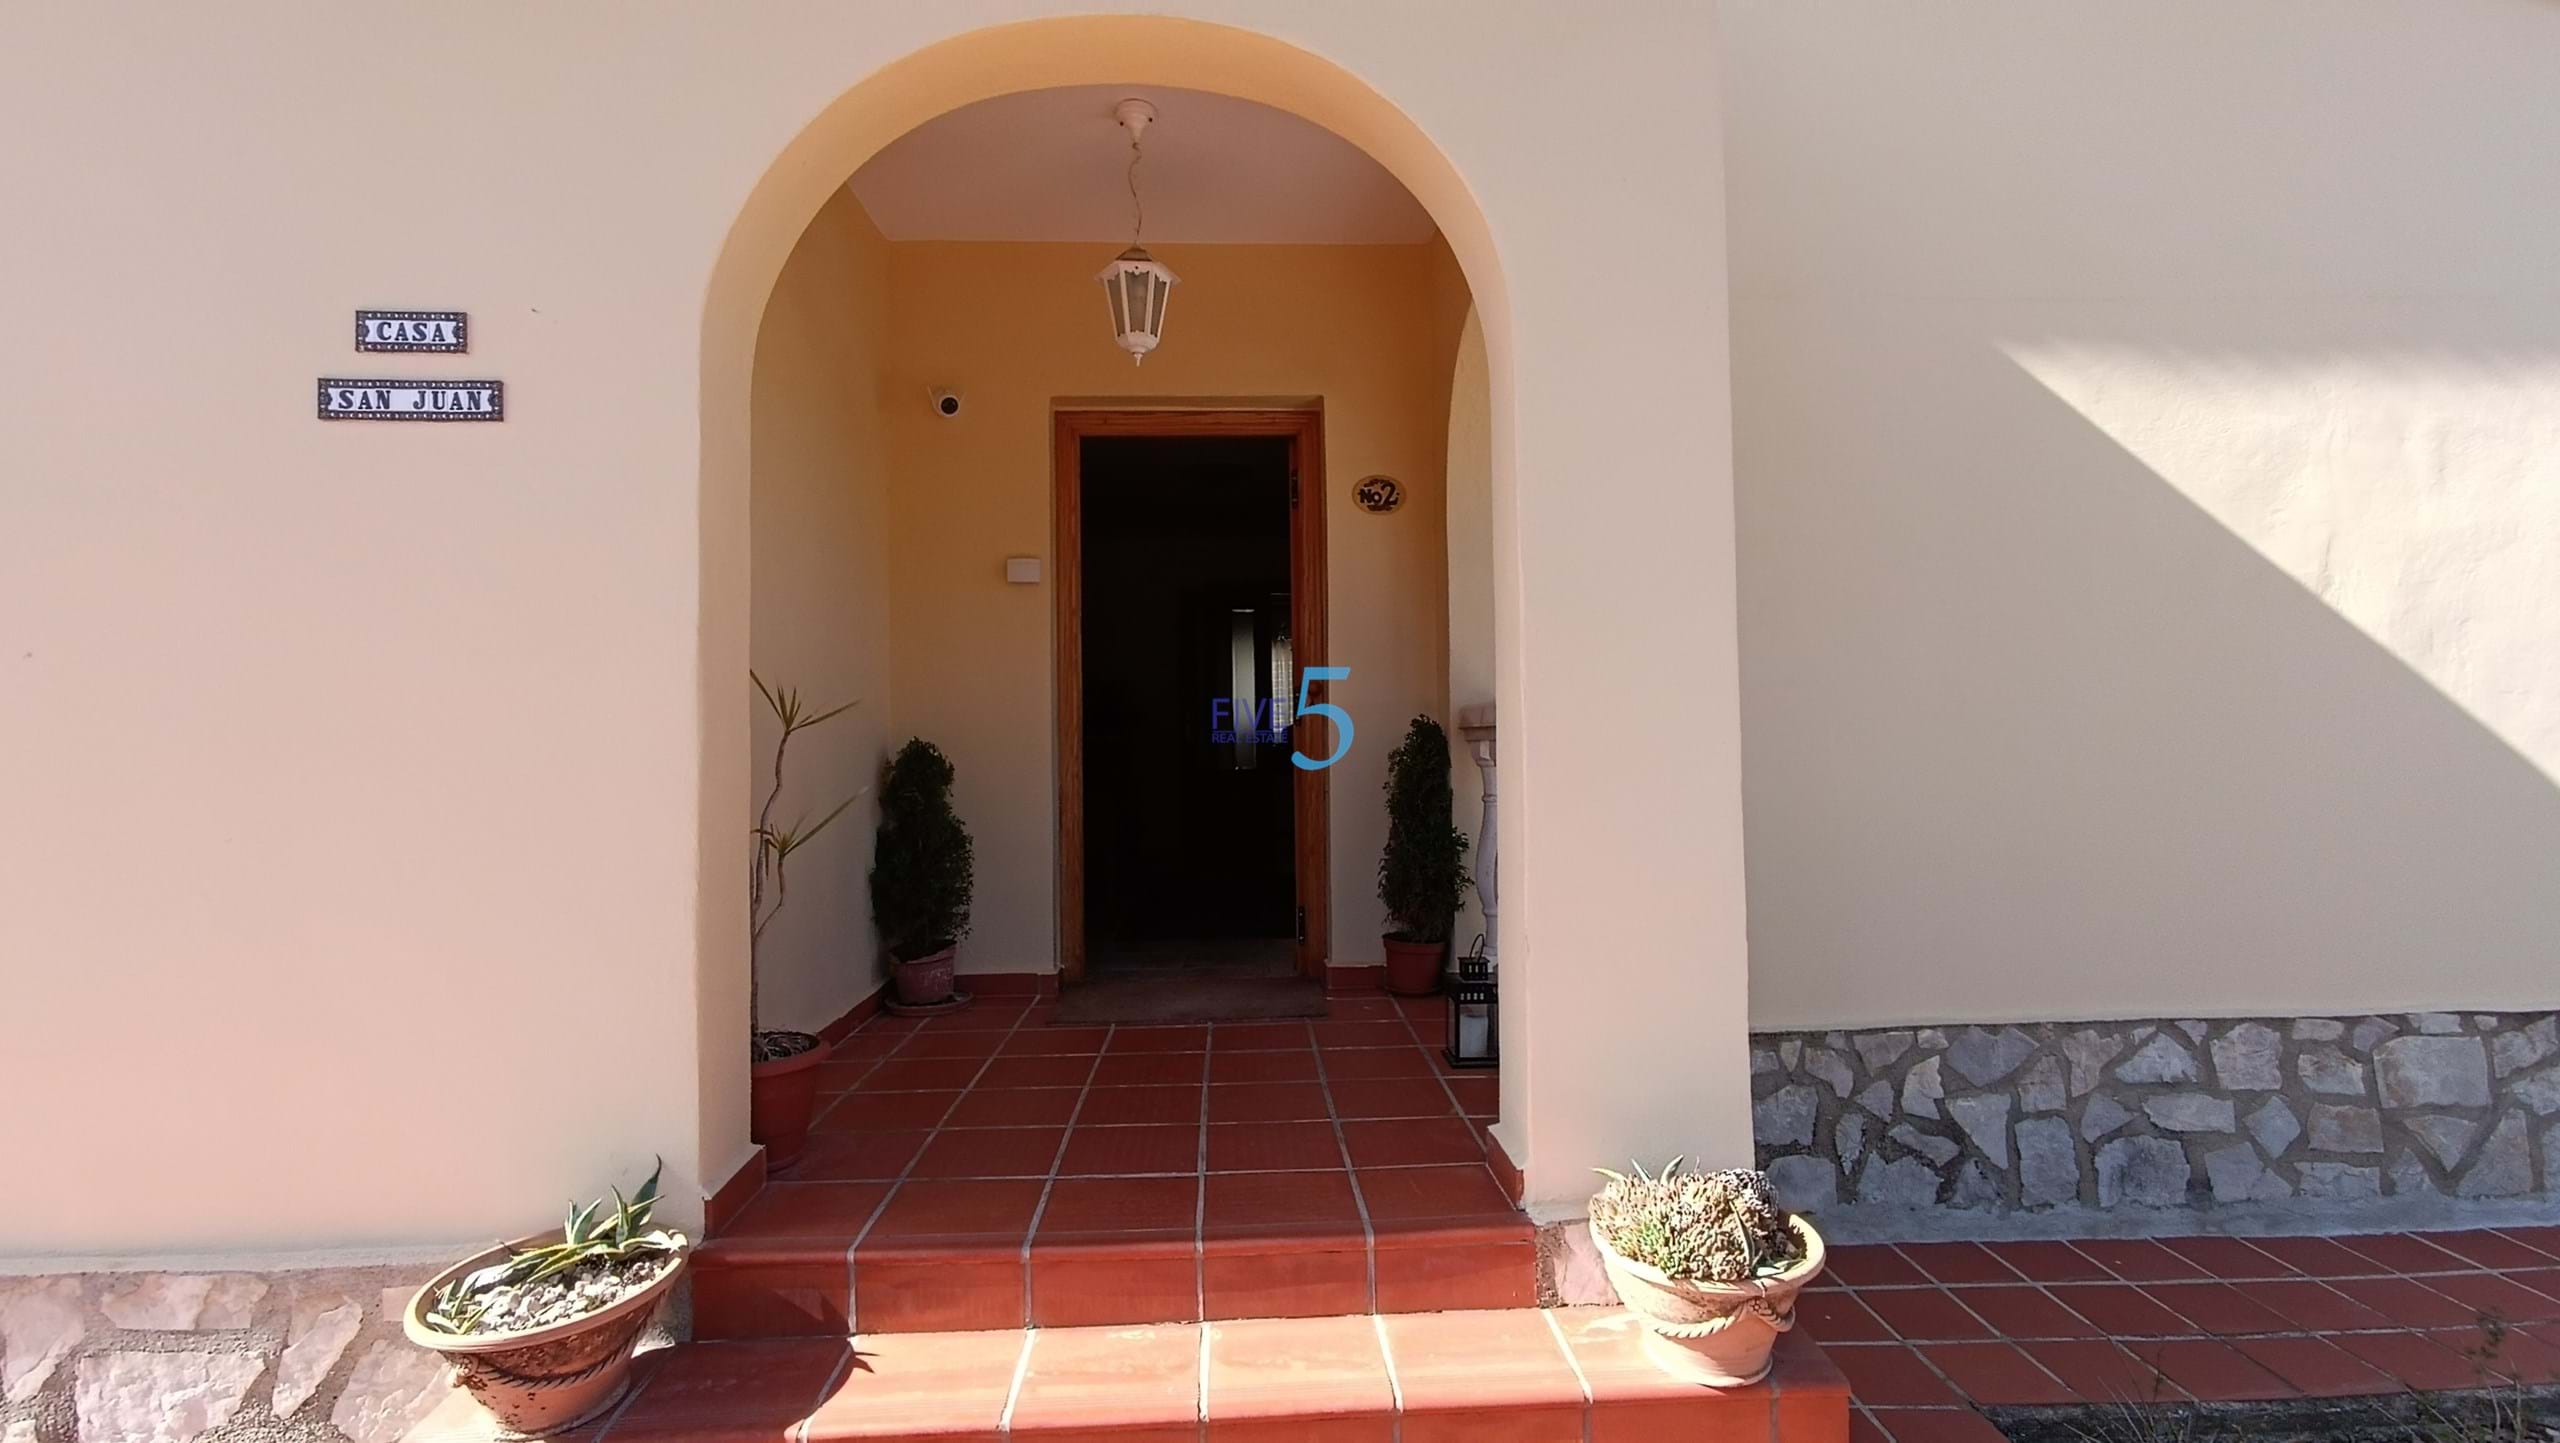 Villa for sale in Tabernes del la Valldigna 25